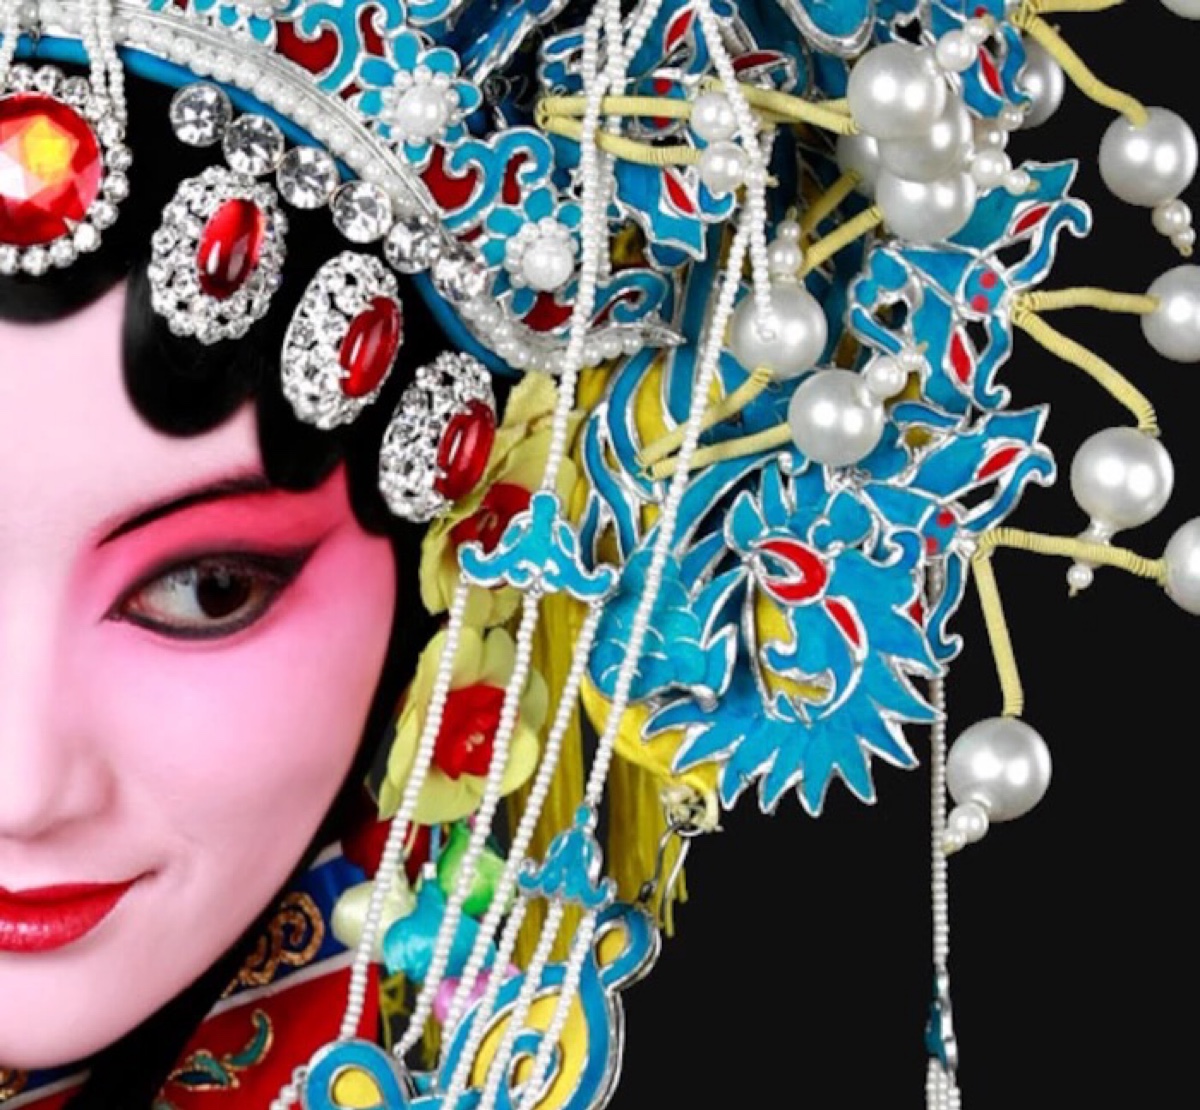 【中国国粹——京剧】国剧。青衣。花旦。戏… - 高清图片，堆糖，美图壁纸兴趣社区